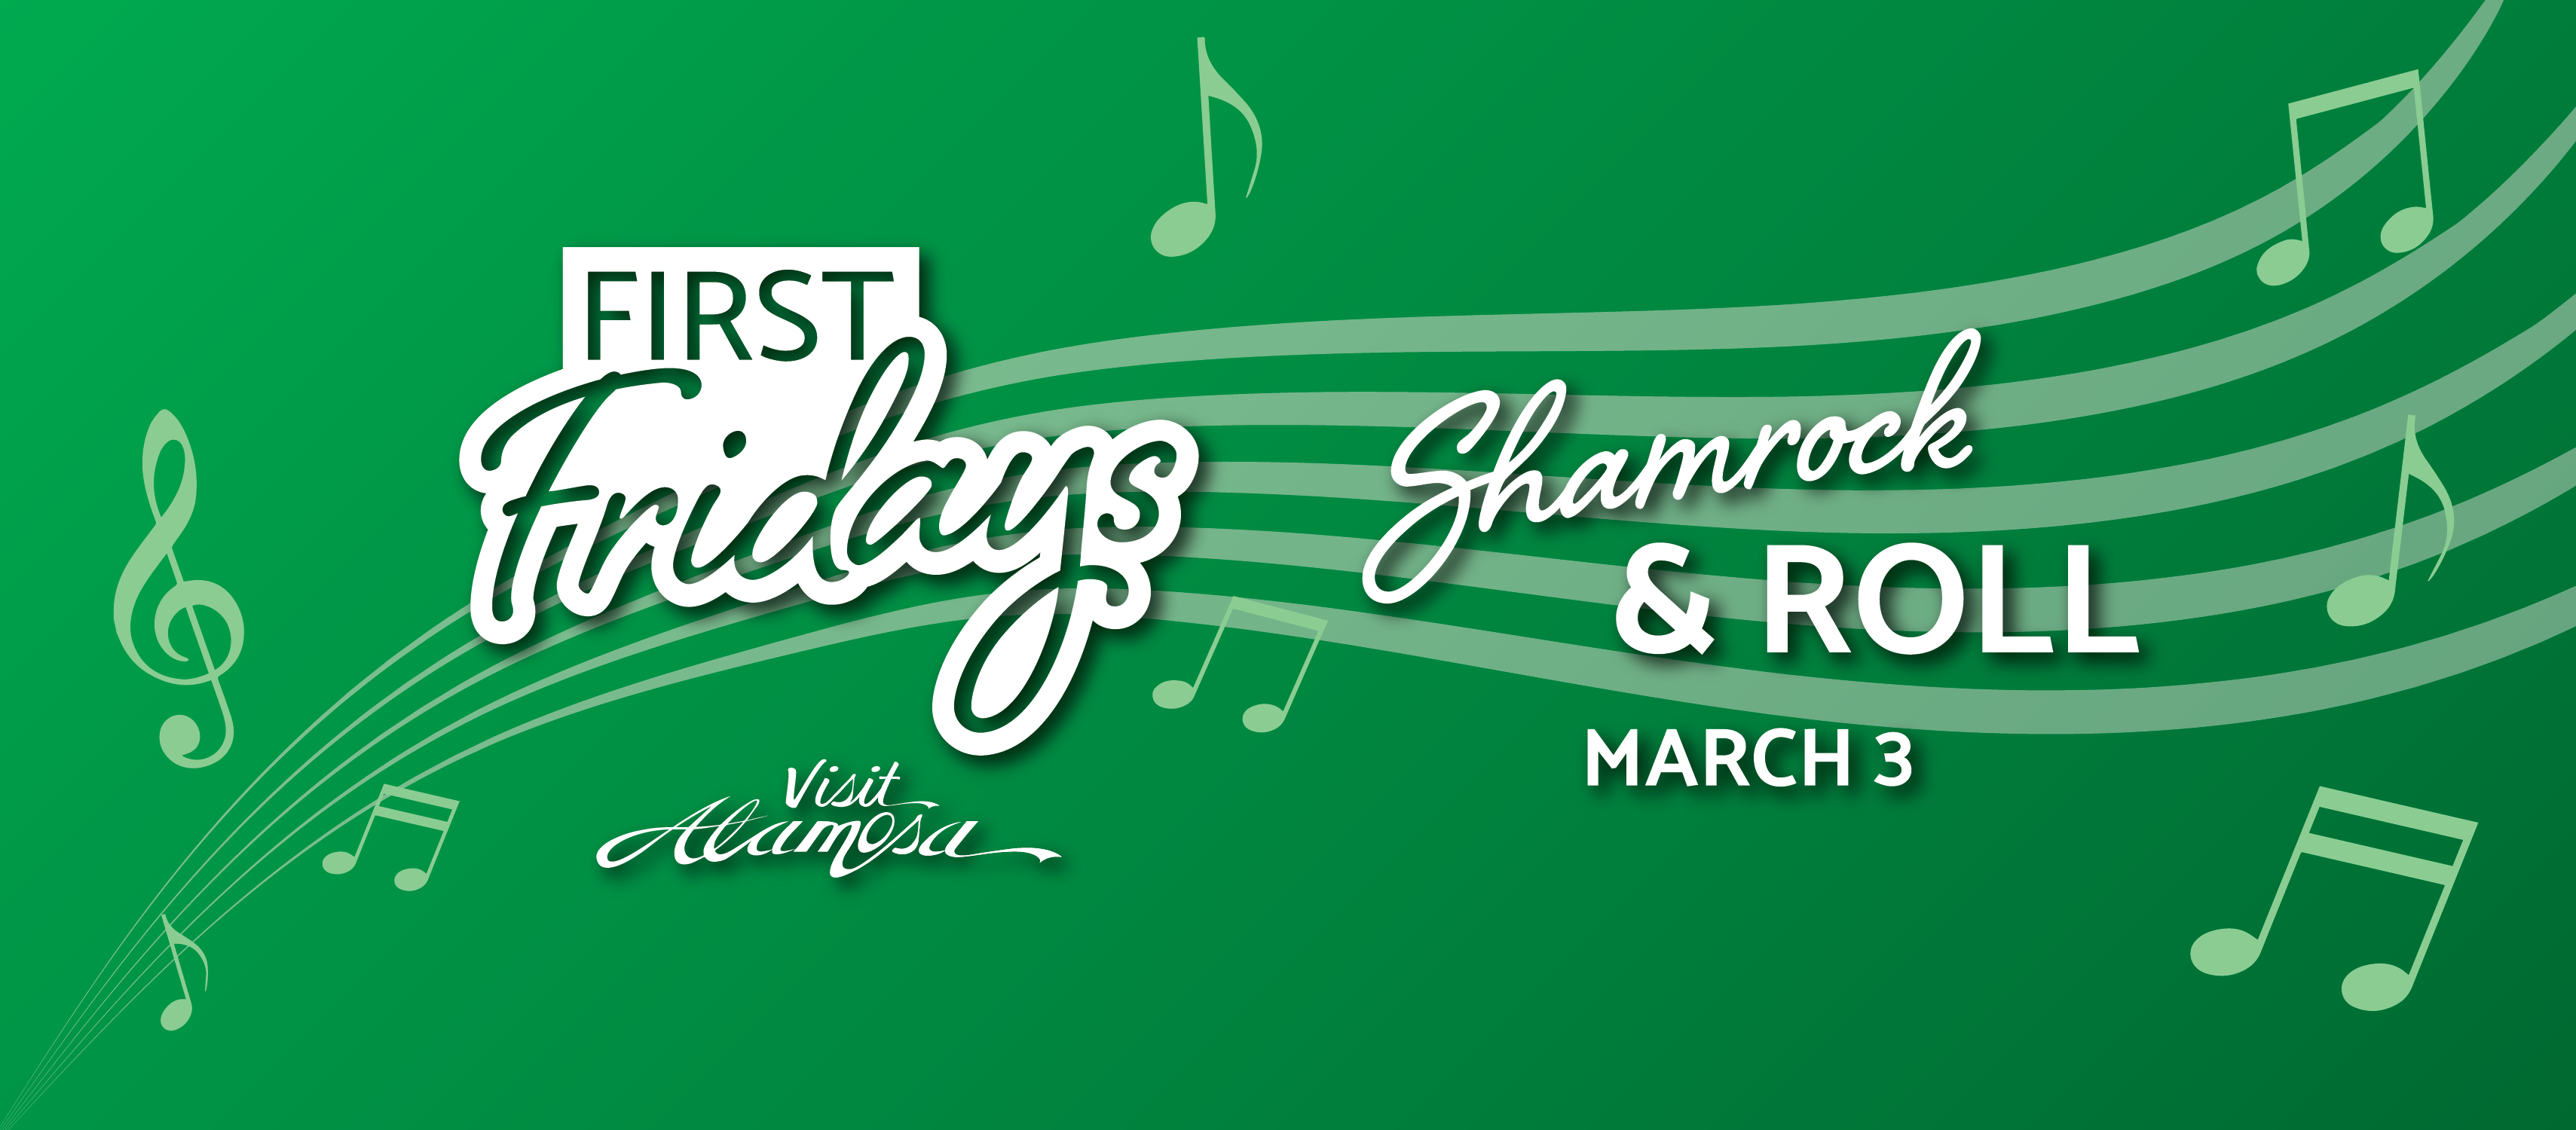 First Fridays March 3-Shamrock & Roll